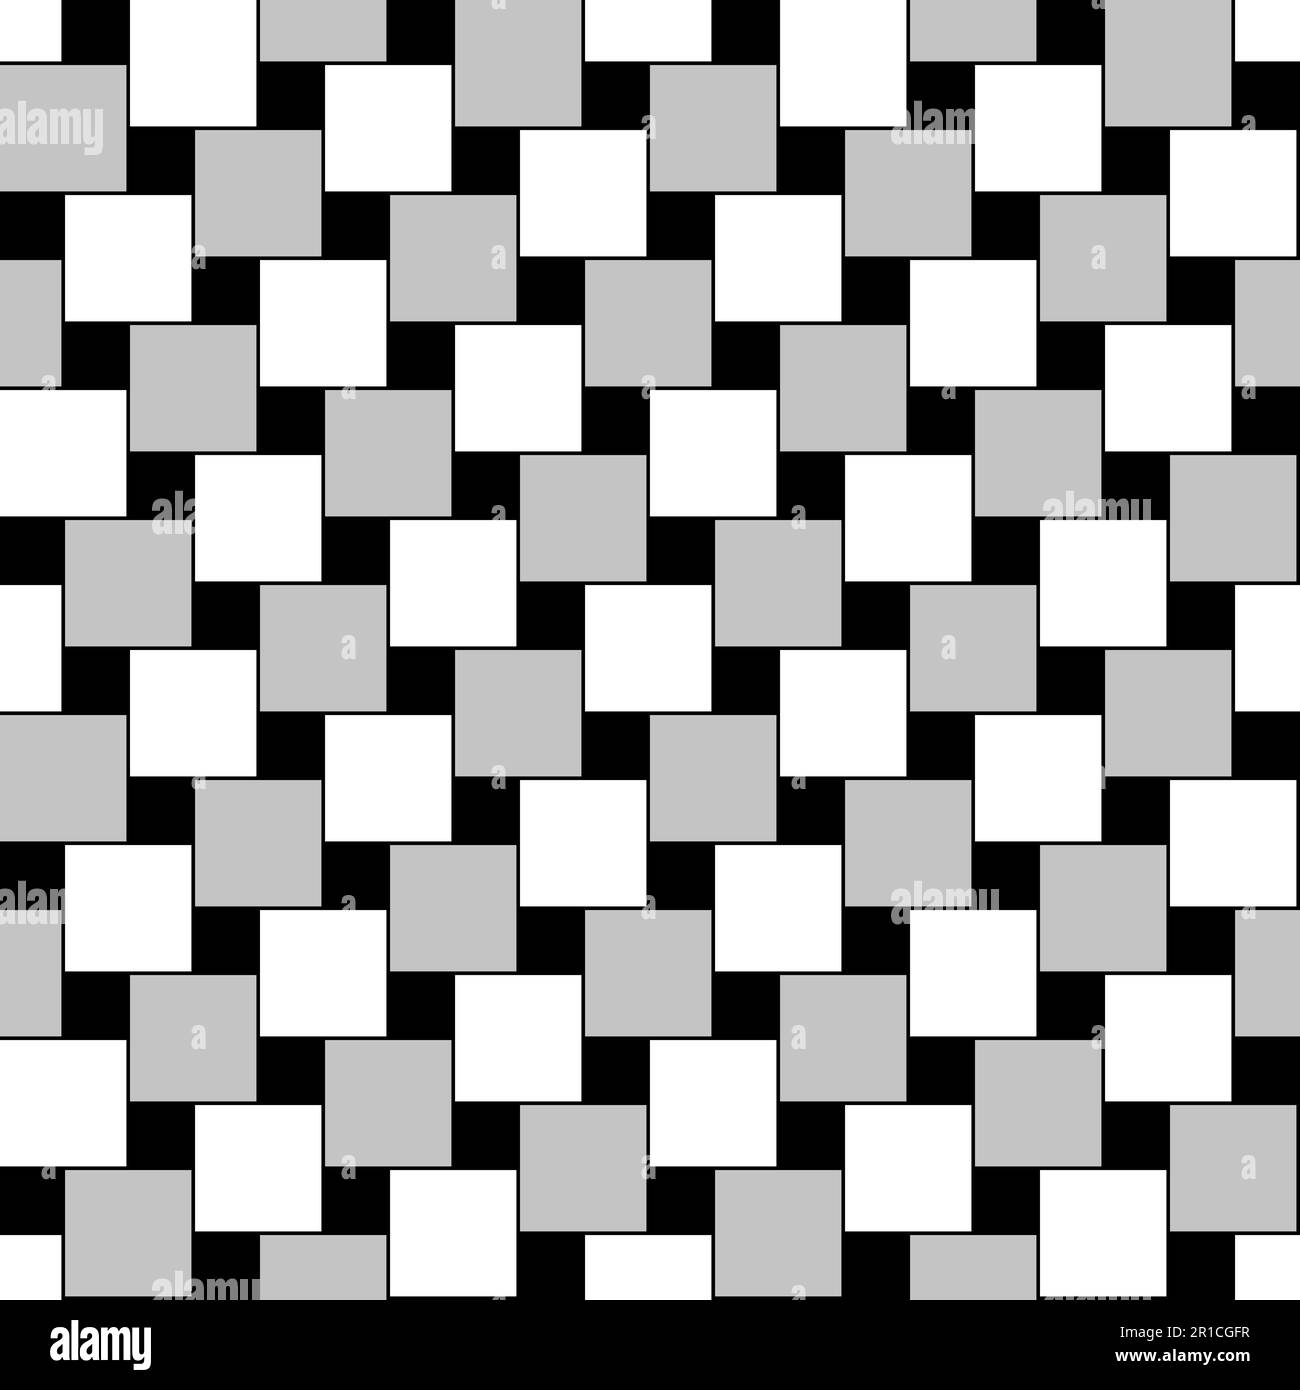 Motivo quadrato, mattonella senza cuciture, con illusione geometrico-ottica. Speciali quadrati disposti, per apparire non più allineati orizzontalmente, e ritorti. Foto Stock